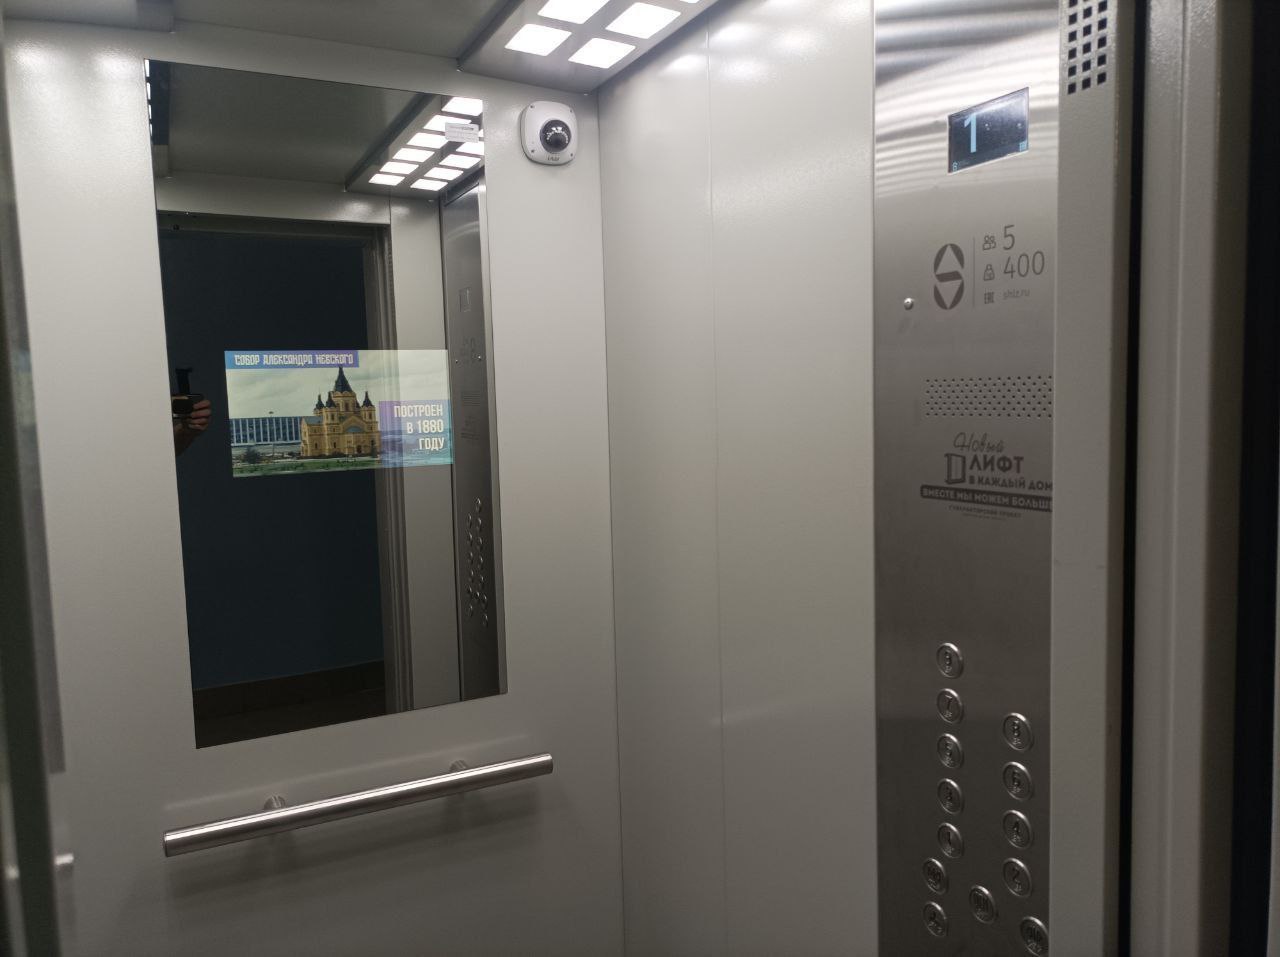 Первые 28 из 2400 лифтов установили в многоквартирных домах Нижегородской области - фото 1